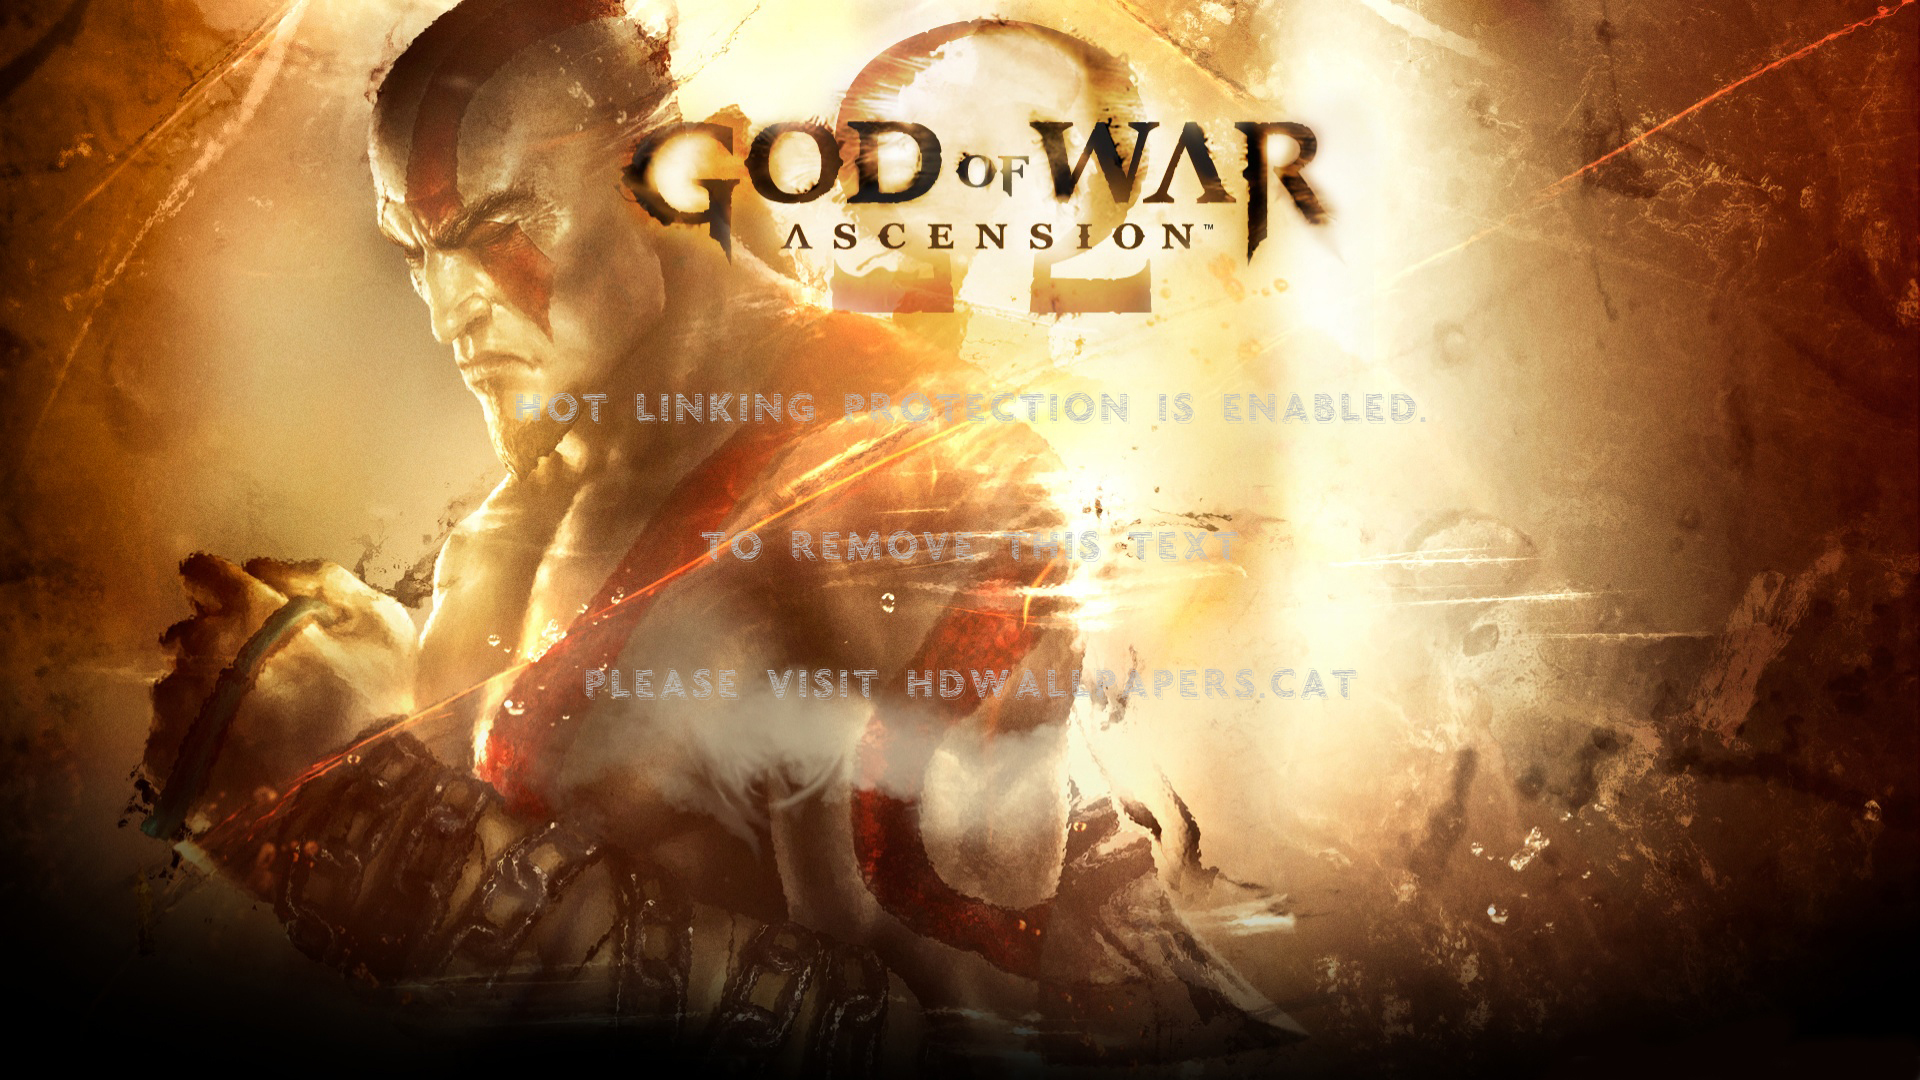 god of war, ascension kratos ps3 beat em